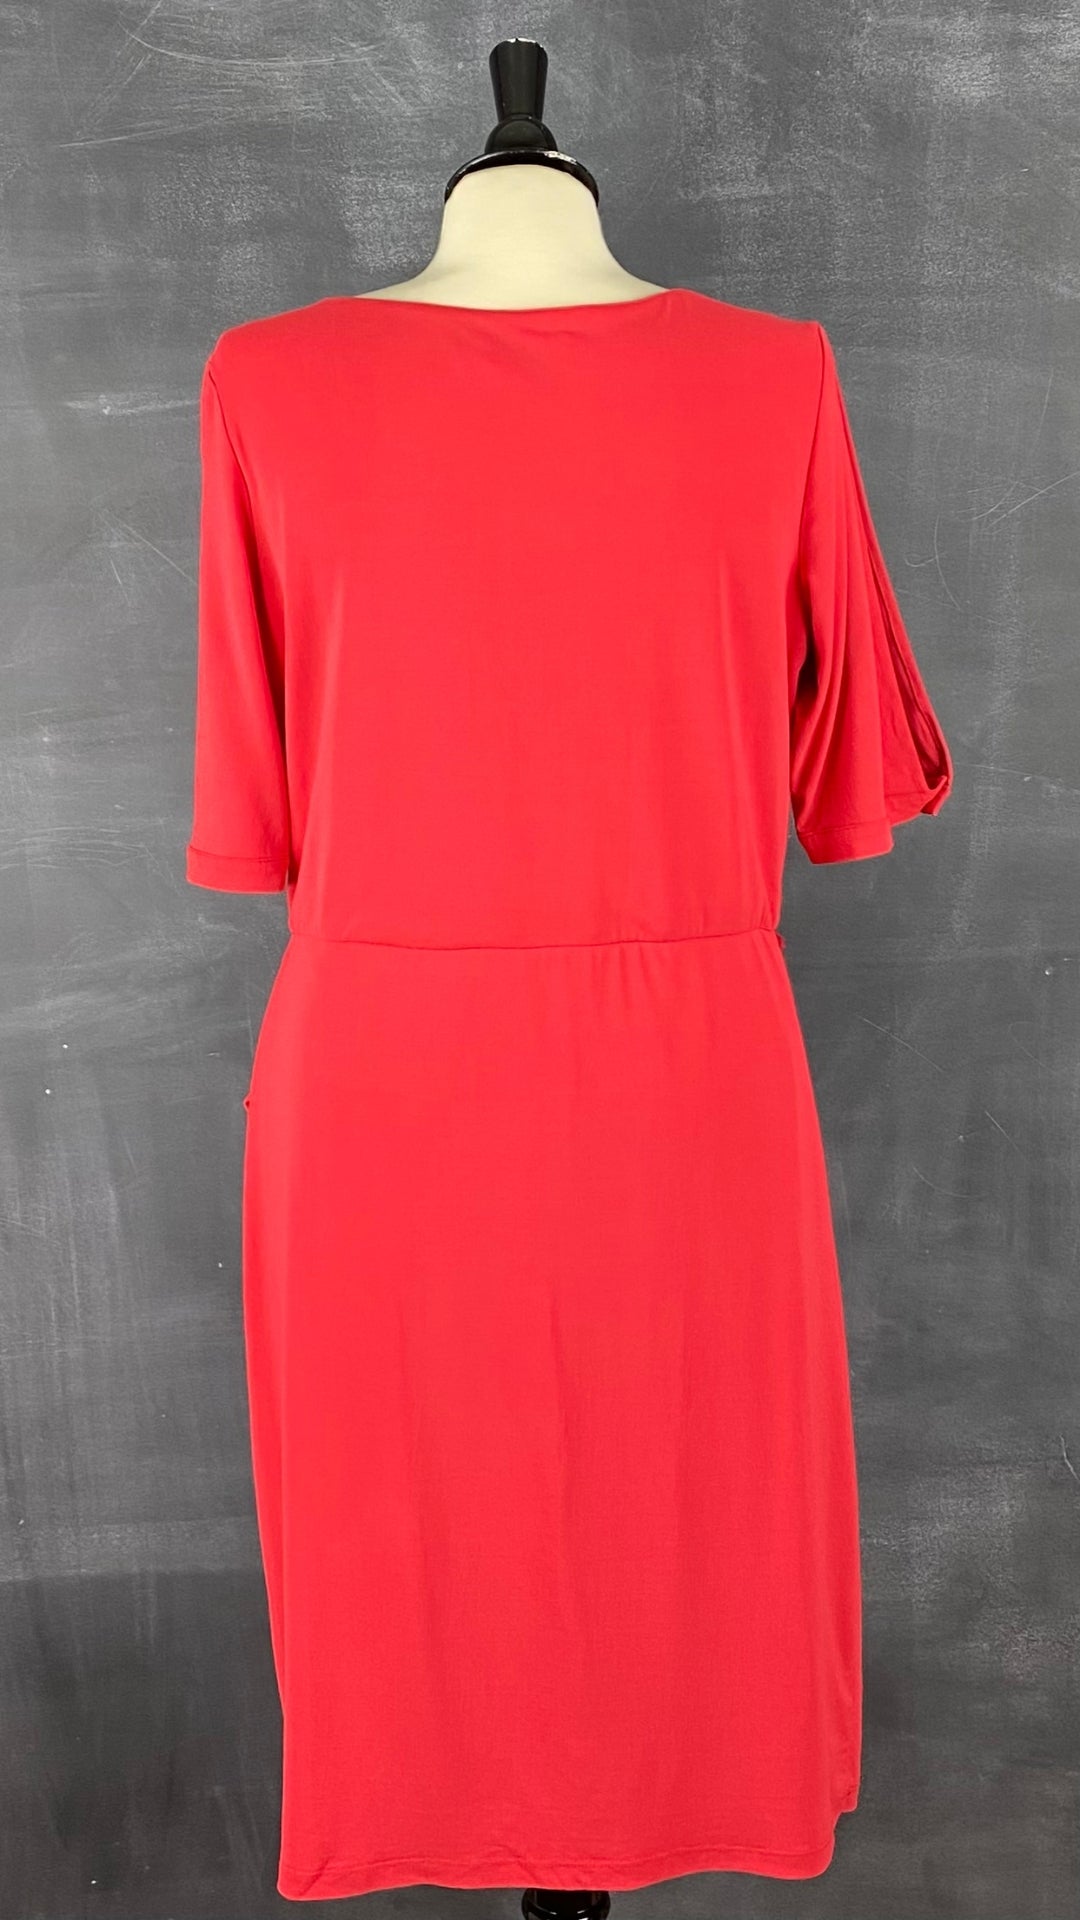 Robe rouge extensible de style portefeuille de la marque québécoise Iris Setlakwe. Magnifique coupe et superbe robe classique. Vue de dos.